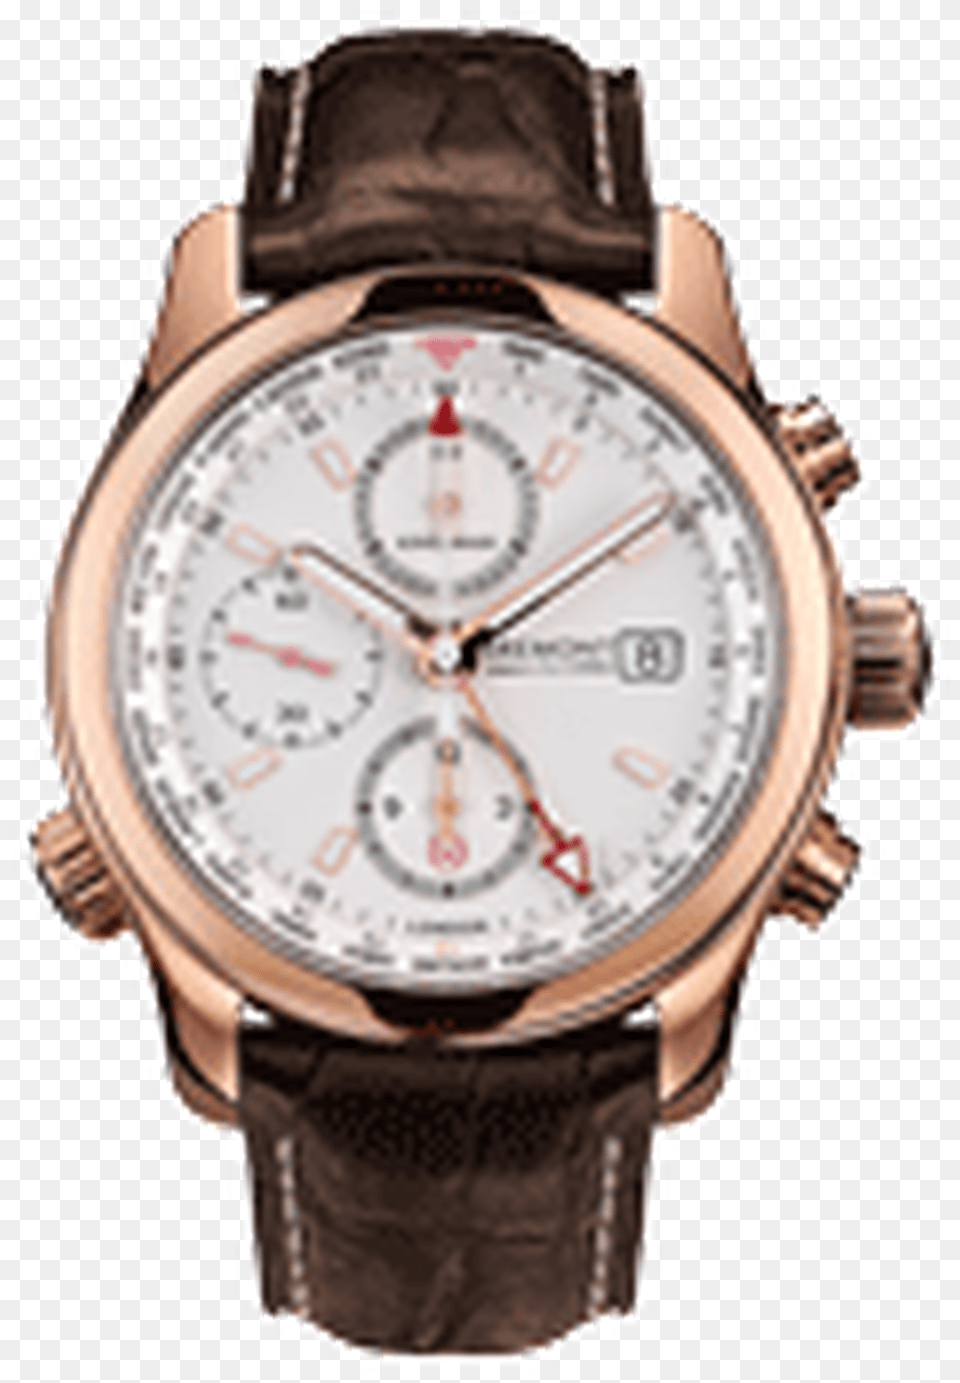 Reloj Bremont Kingsman, Arm, Body Part, Person, Wristwatch Png